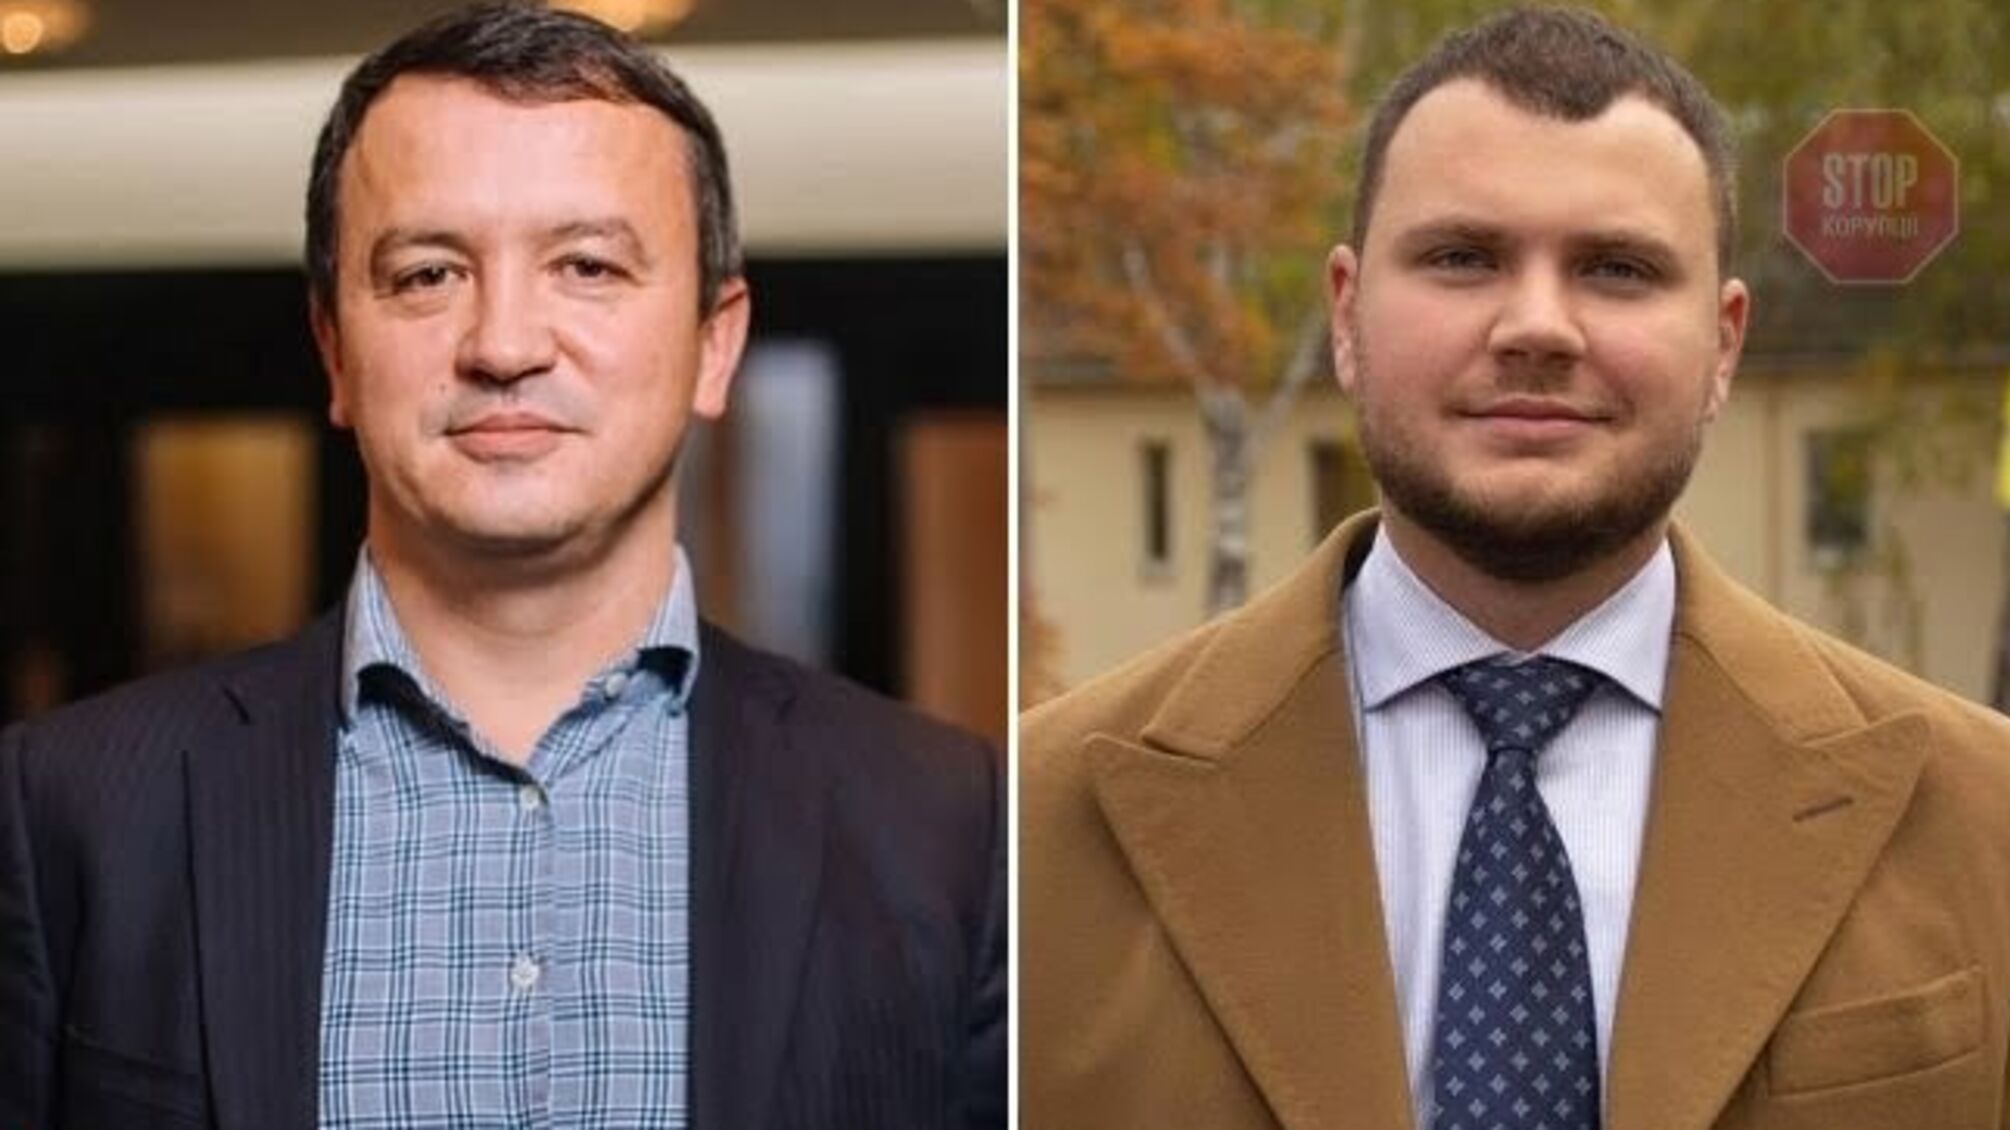 Петрашко и Криклий написали заявления об отставке